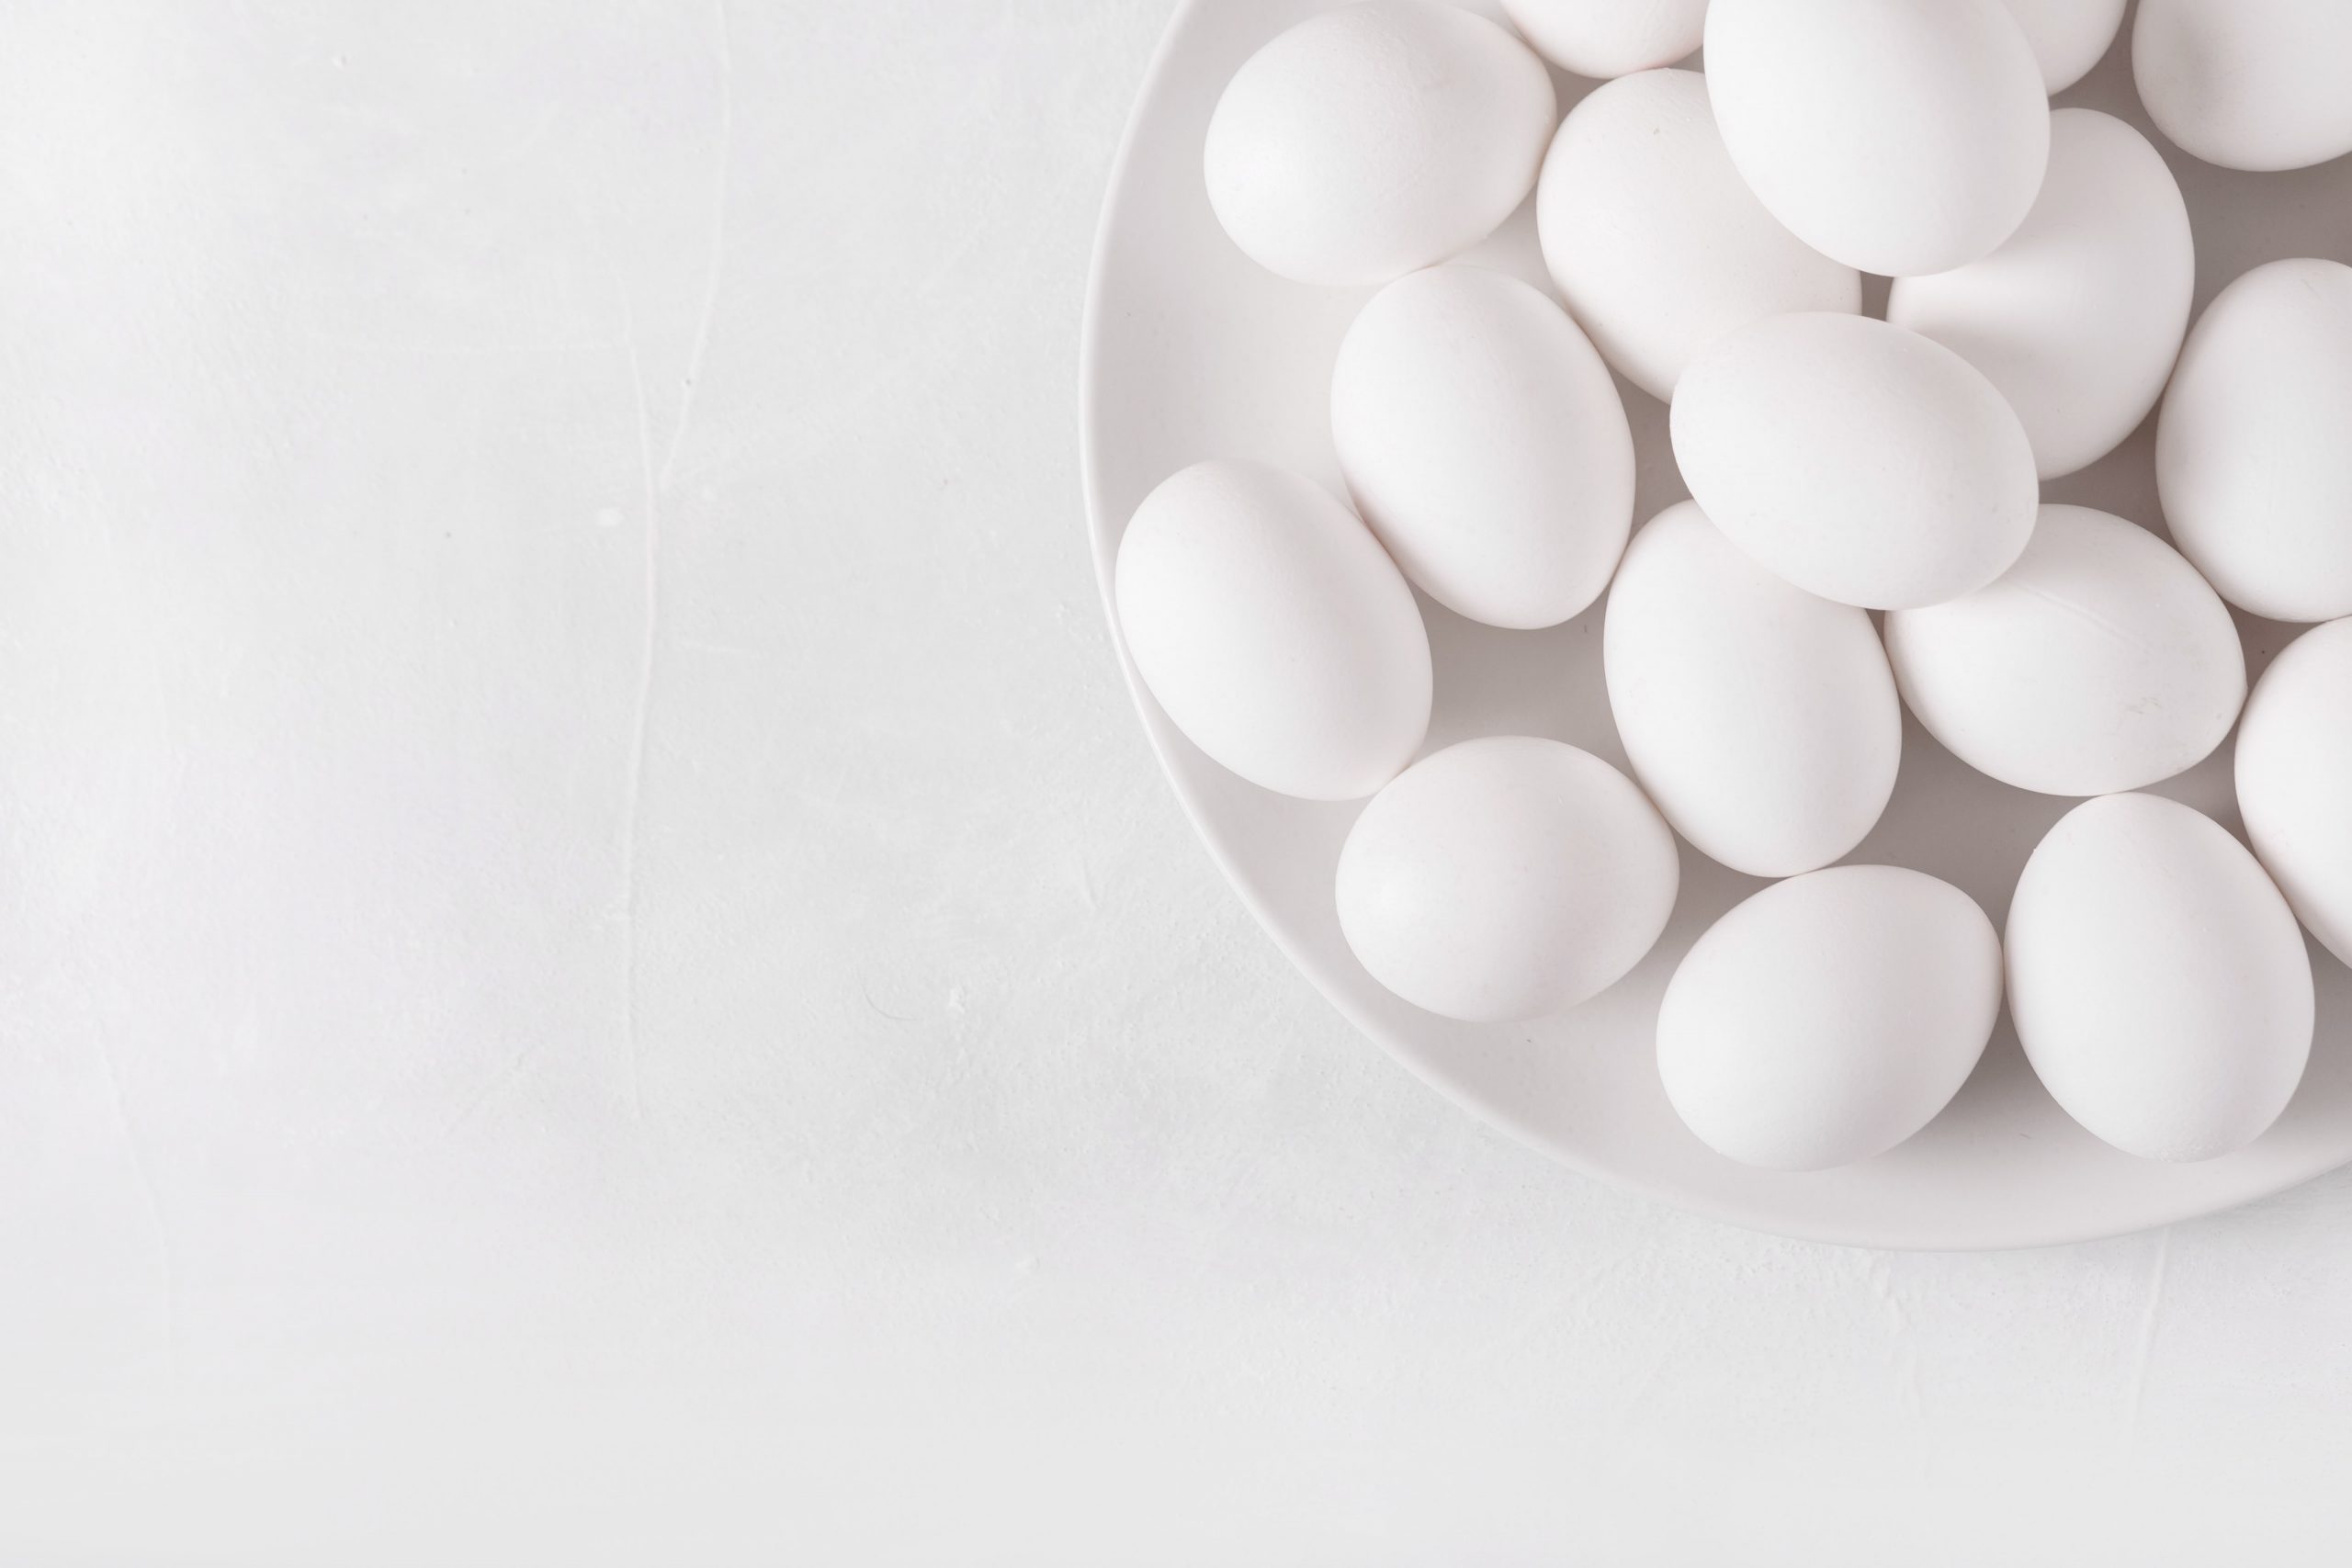 آپ کو انڈے وال پیپر کے بارے میں کیا جاننے کی ضرورت ہے۔